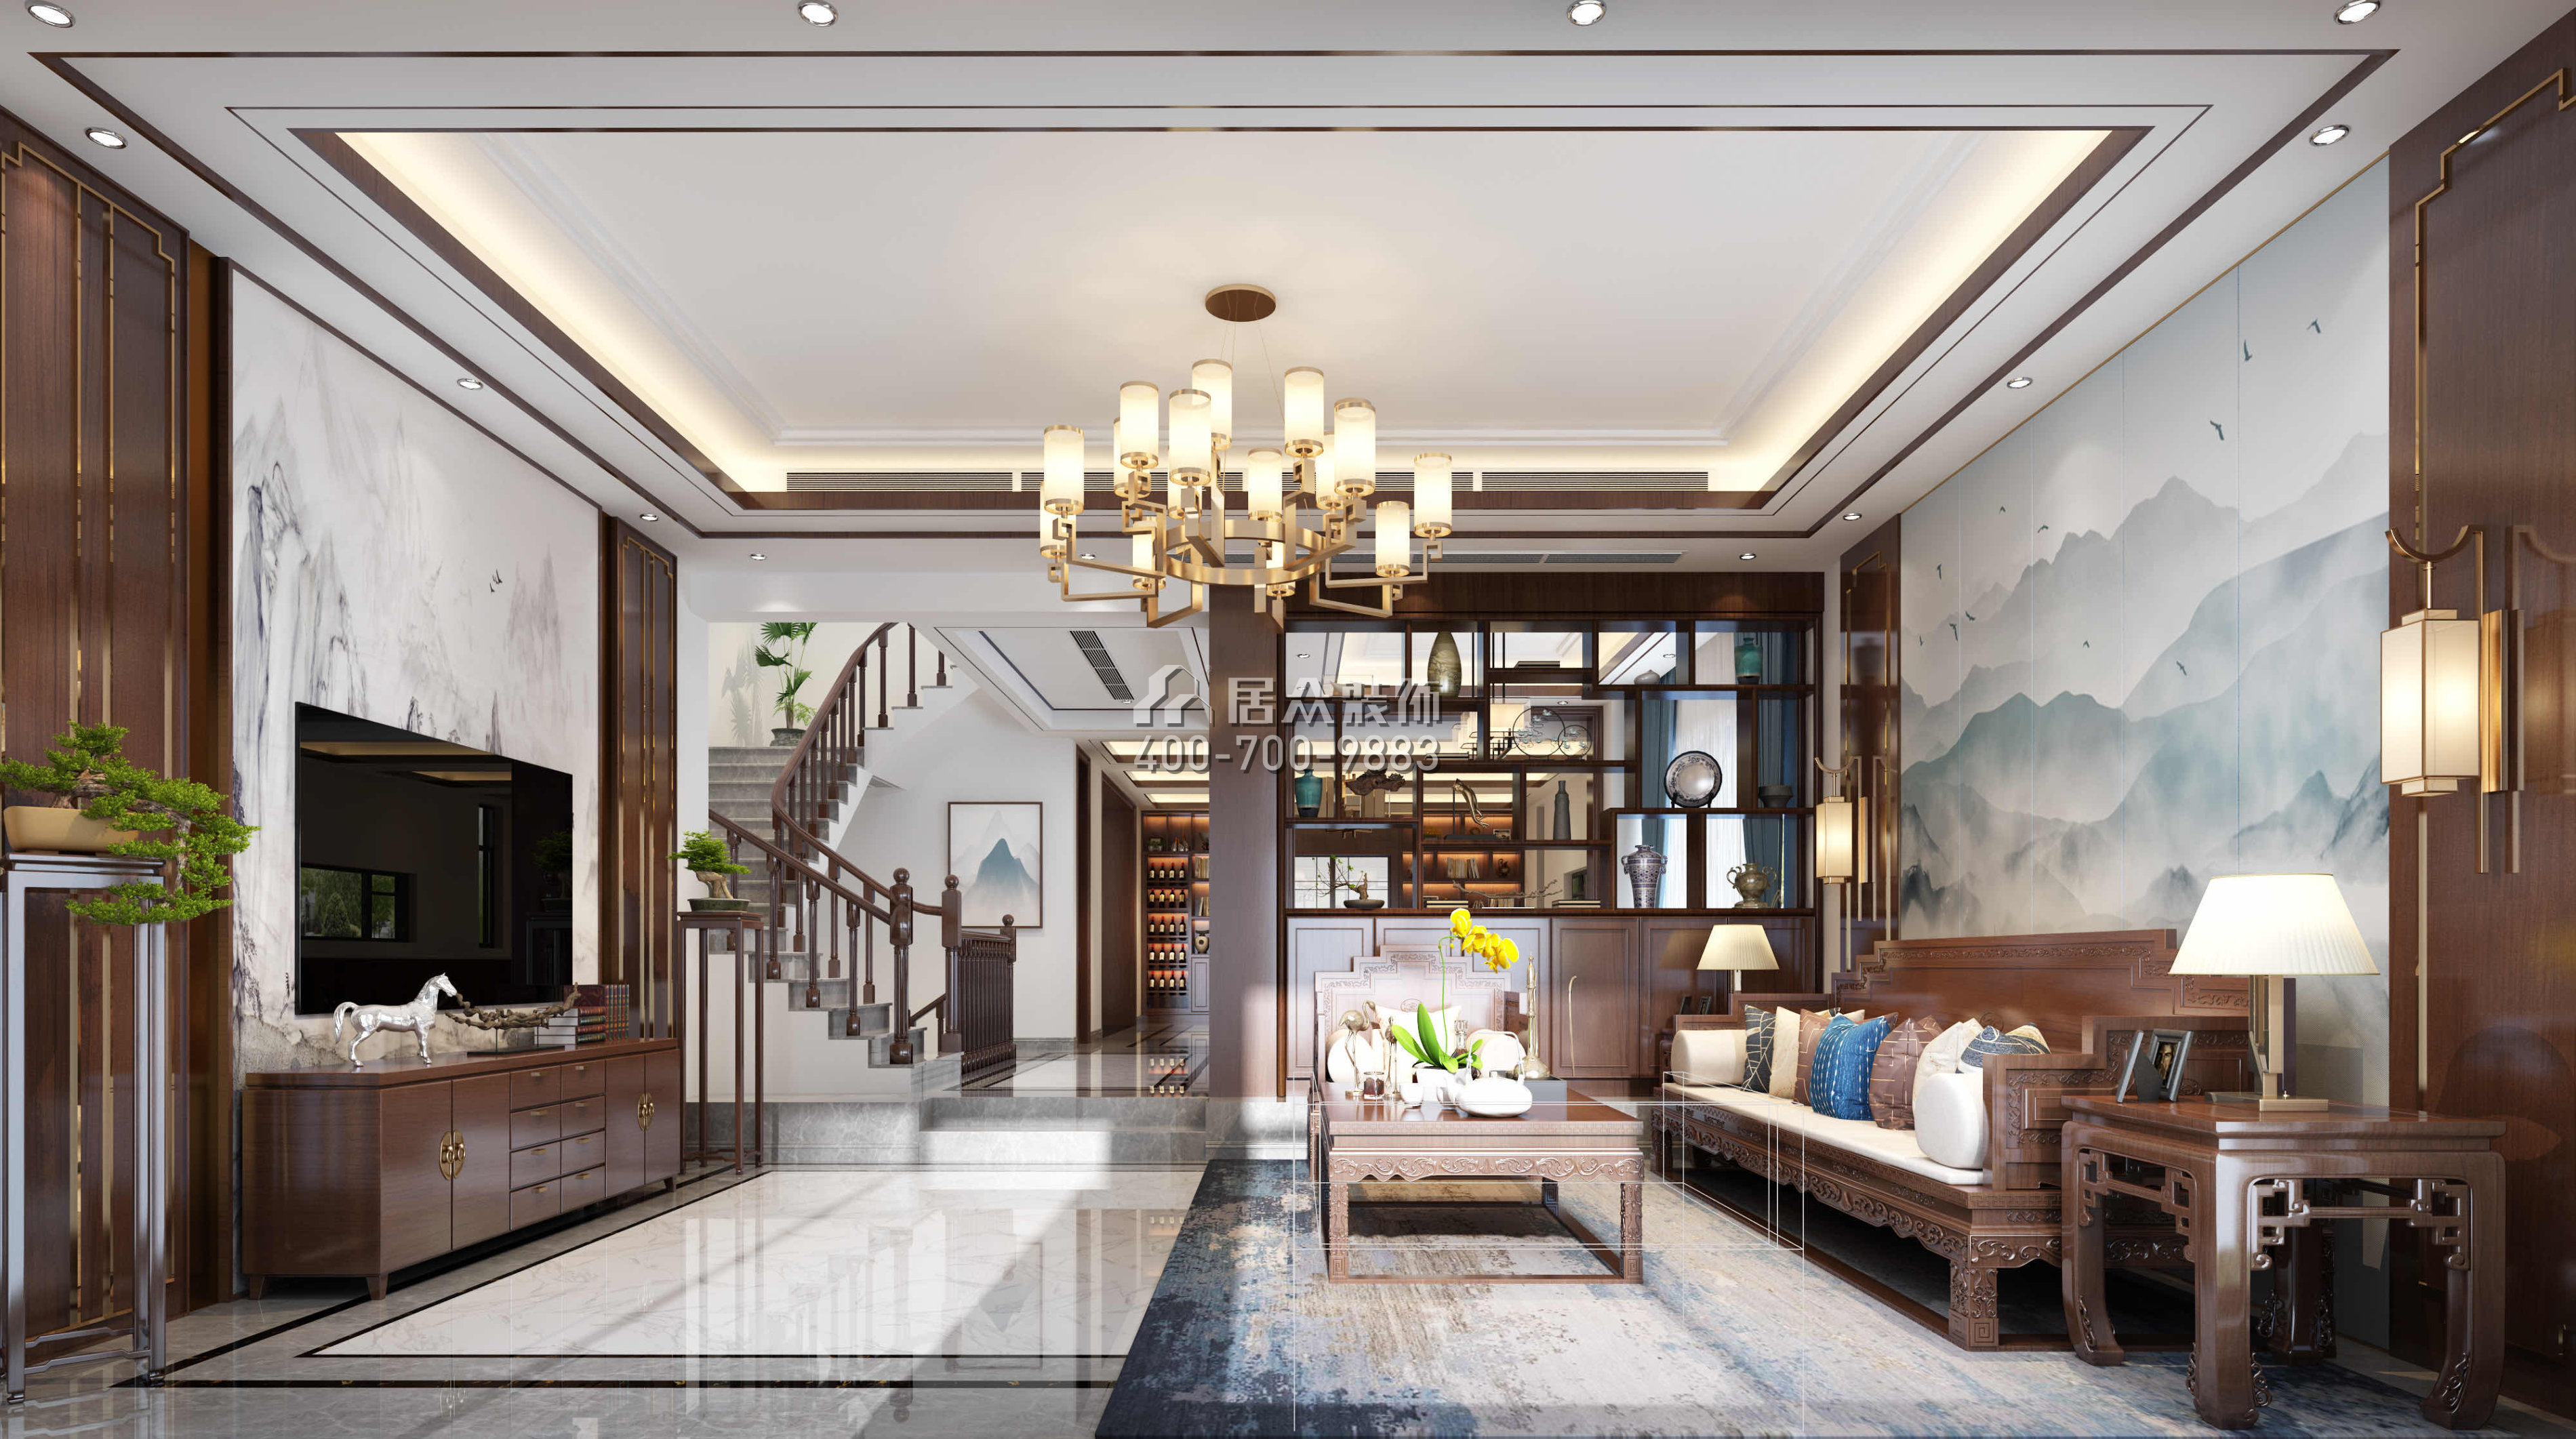 華發新城480平方米中式風格別墅戶型客廳裝修效果圖